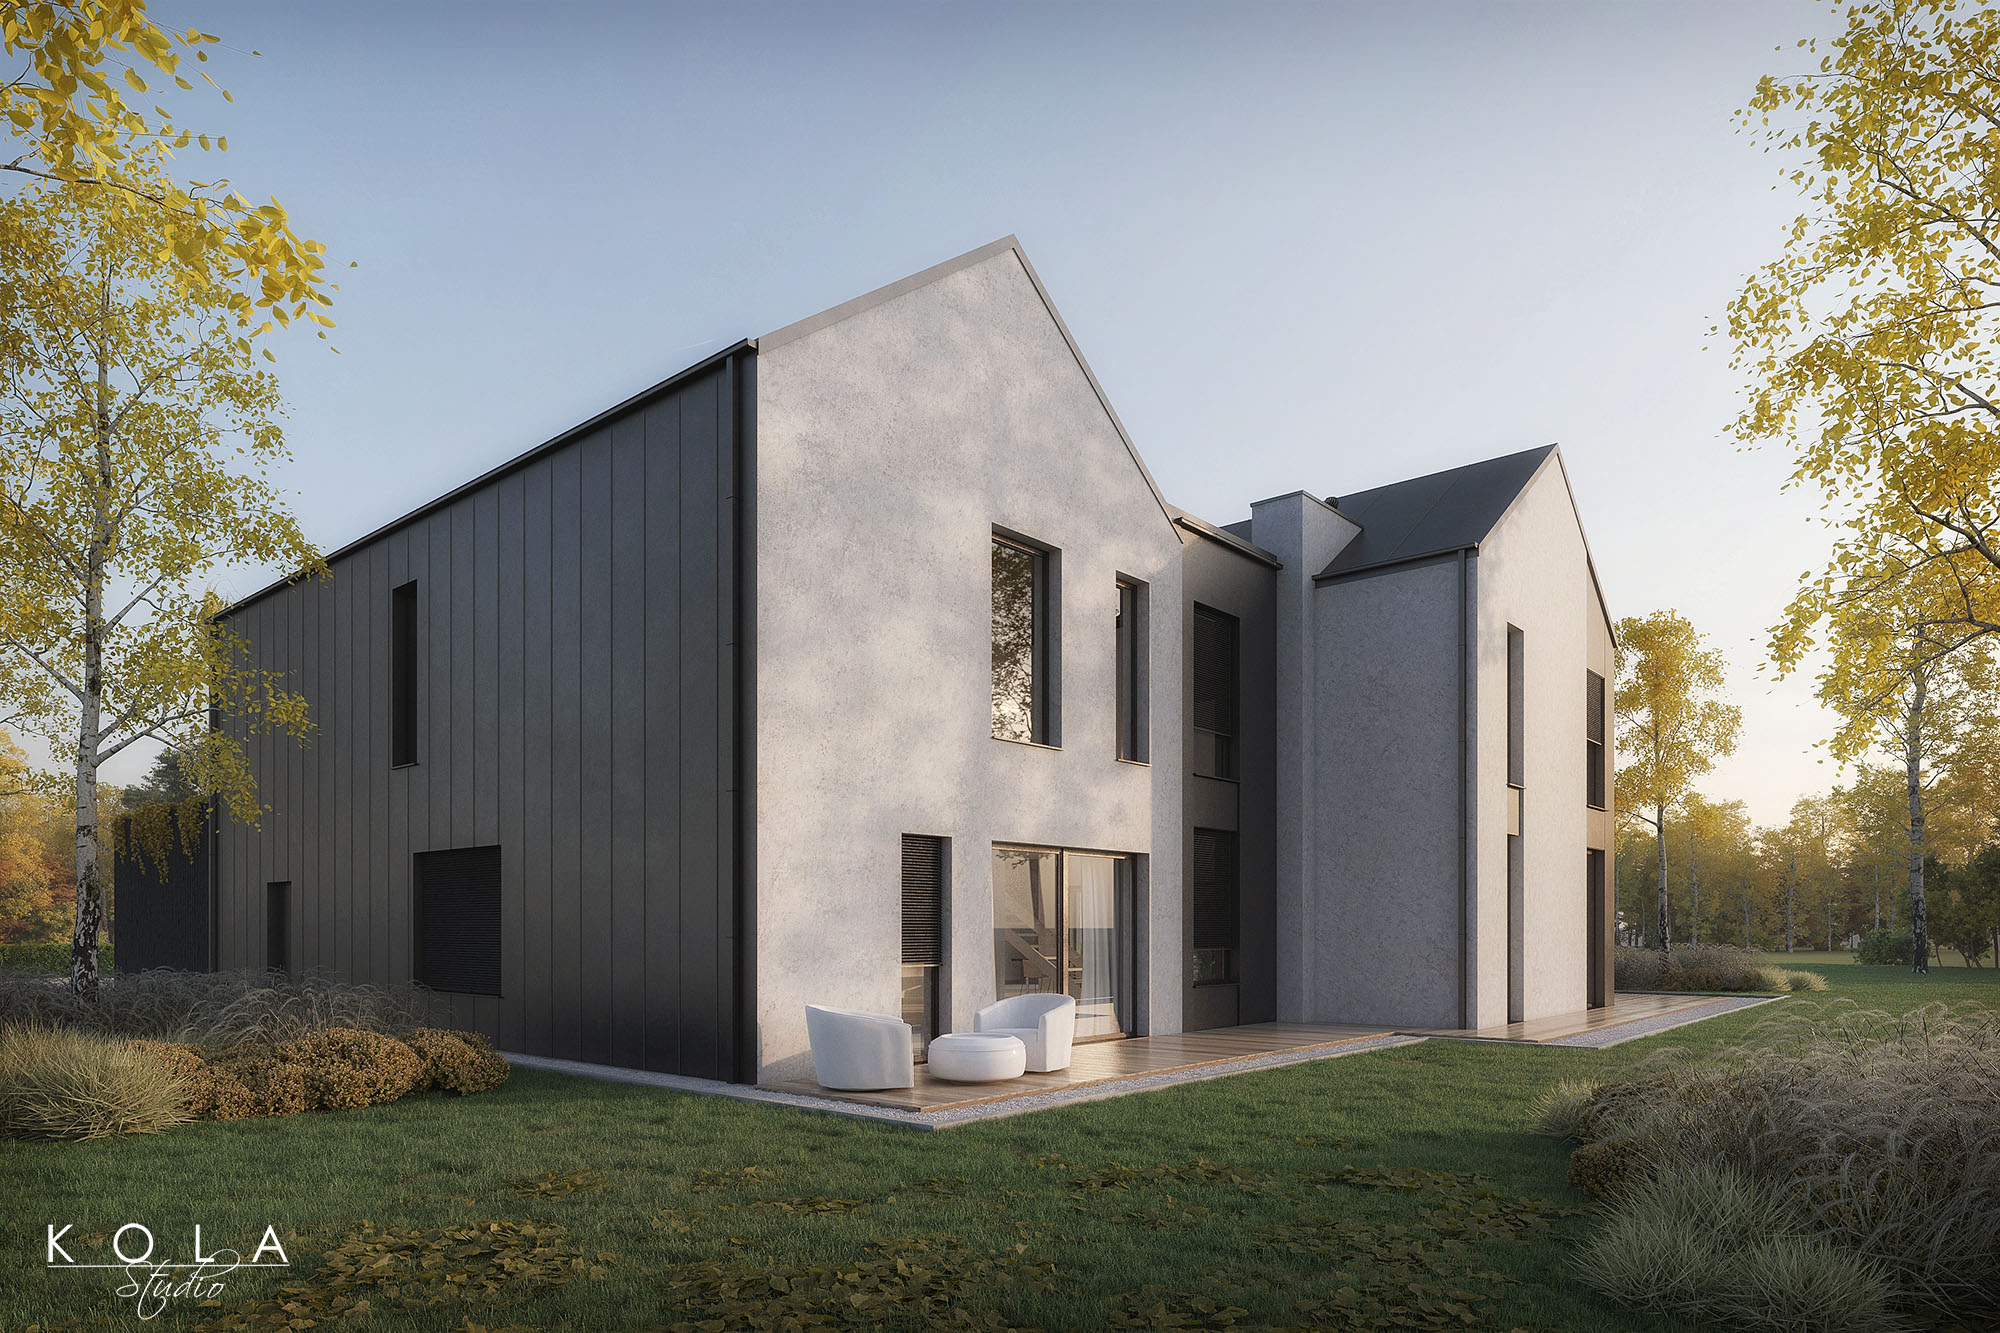 wizualizacje projektu wiejskiego domu jednorodzinnego w stylu nowoczesnej stodoły wykończonego w ciemnym drewnie i betonowym tynku